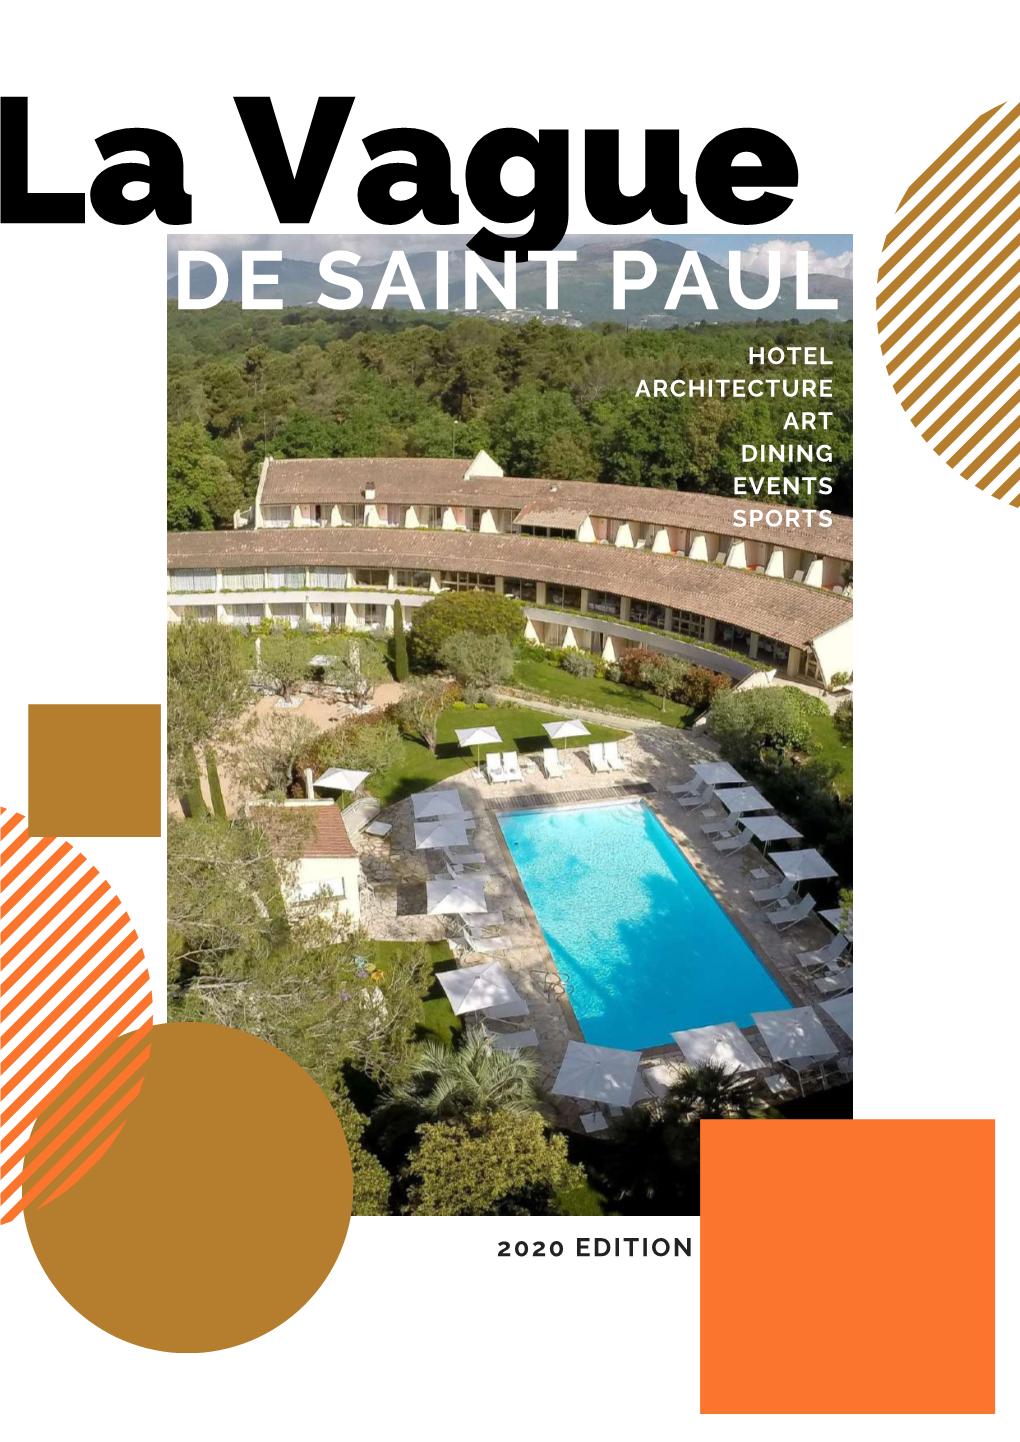 La Vague DE SAINT PAUL HOTEL ARCHITECTURE ART DINING EVENTS SPORTS